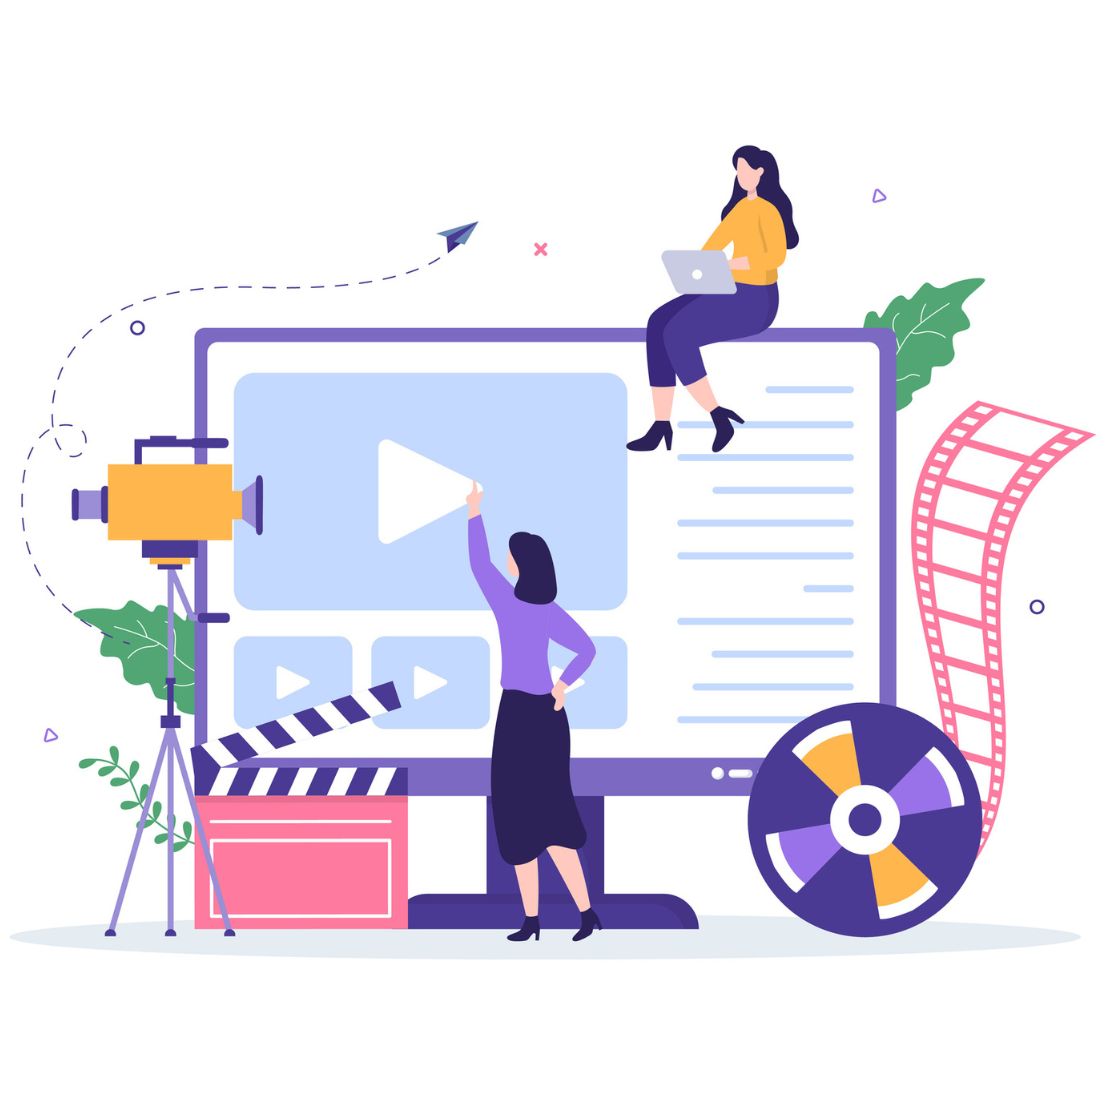 Plataforma de vídeo premium para crear webs de vídeo